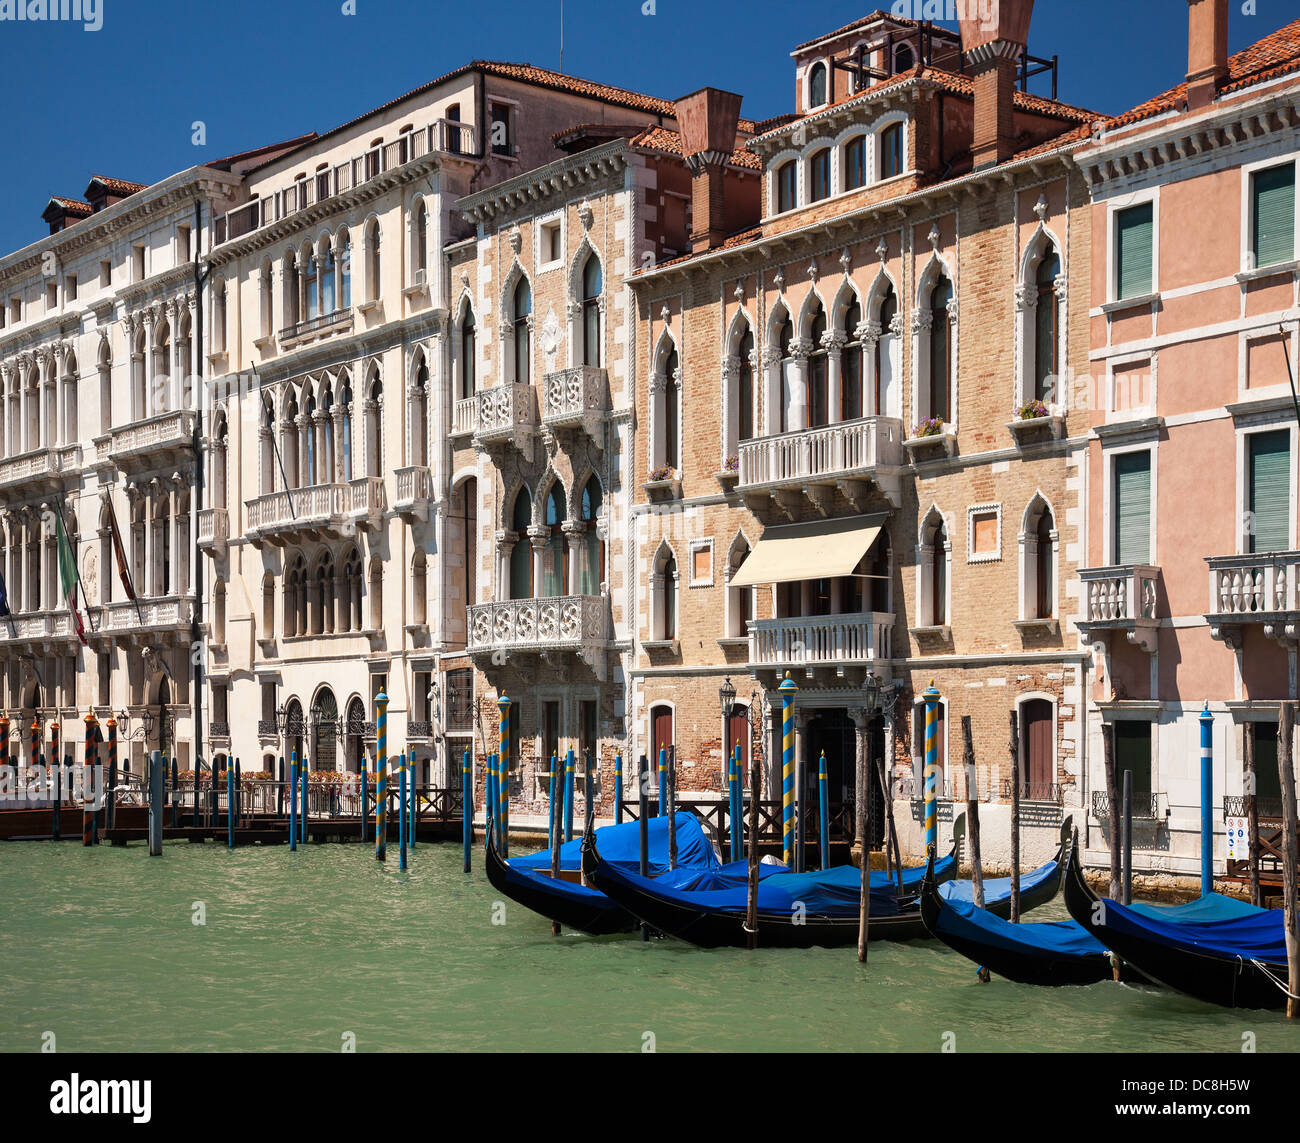 Venise, Italie - gondoles amarré à côté d'un canal à Venise Banque D'Images